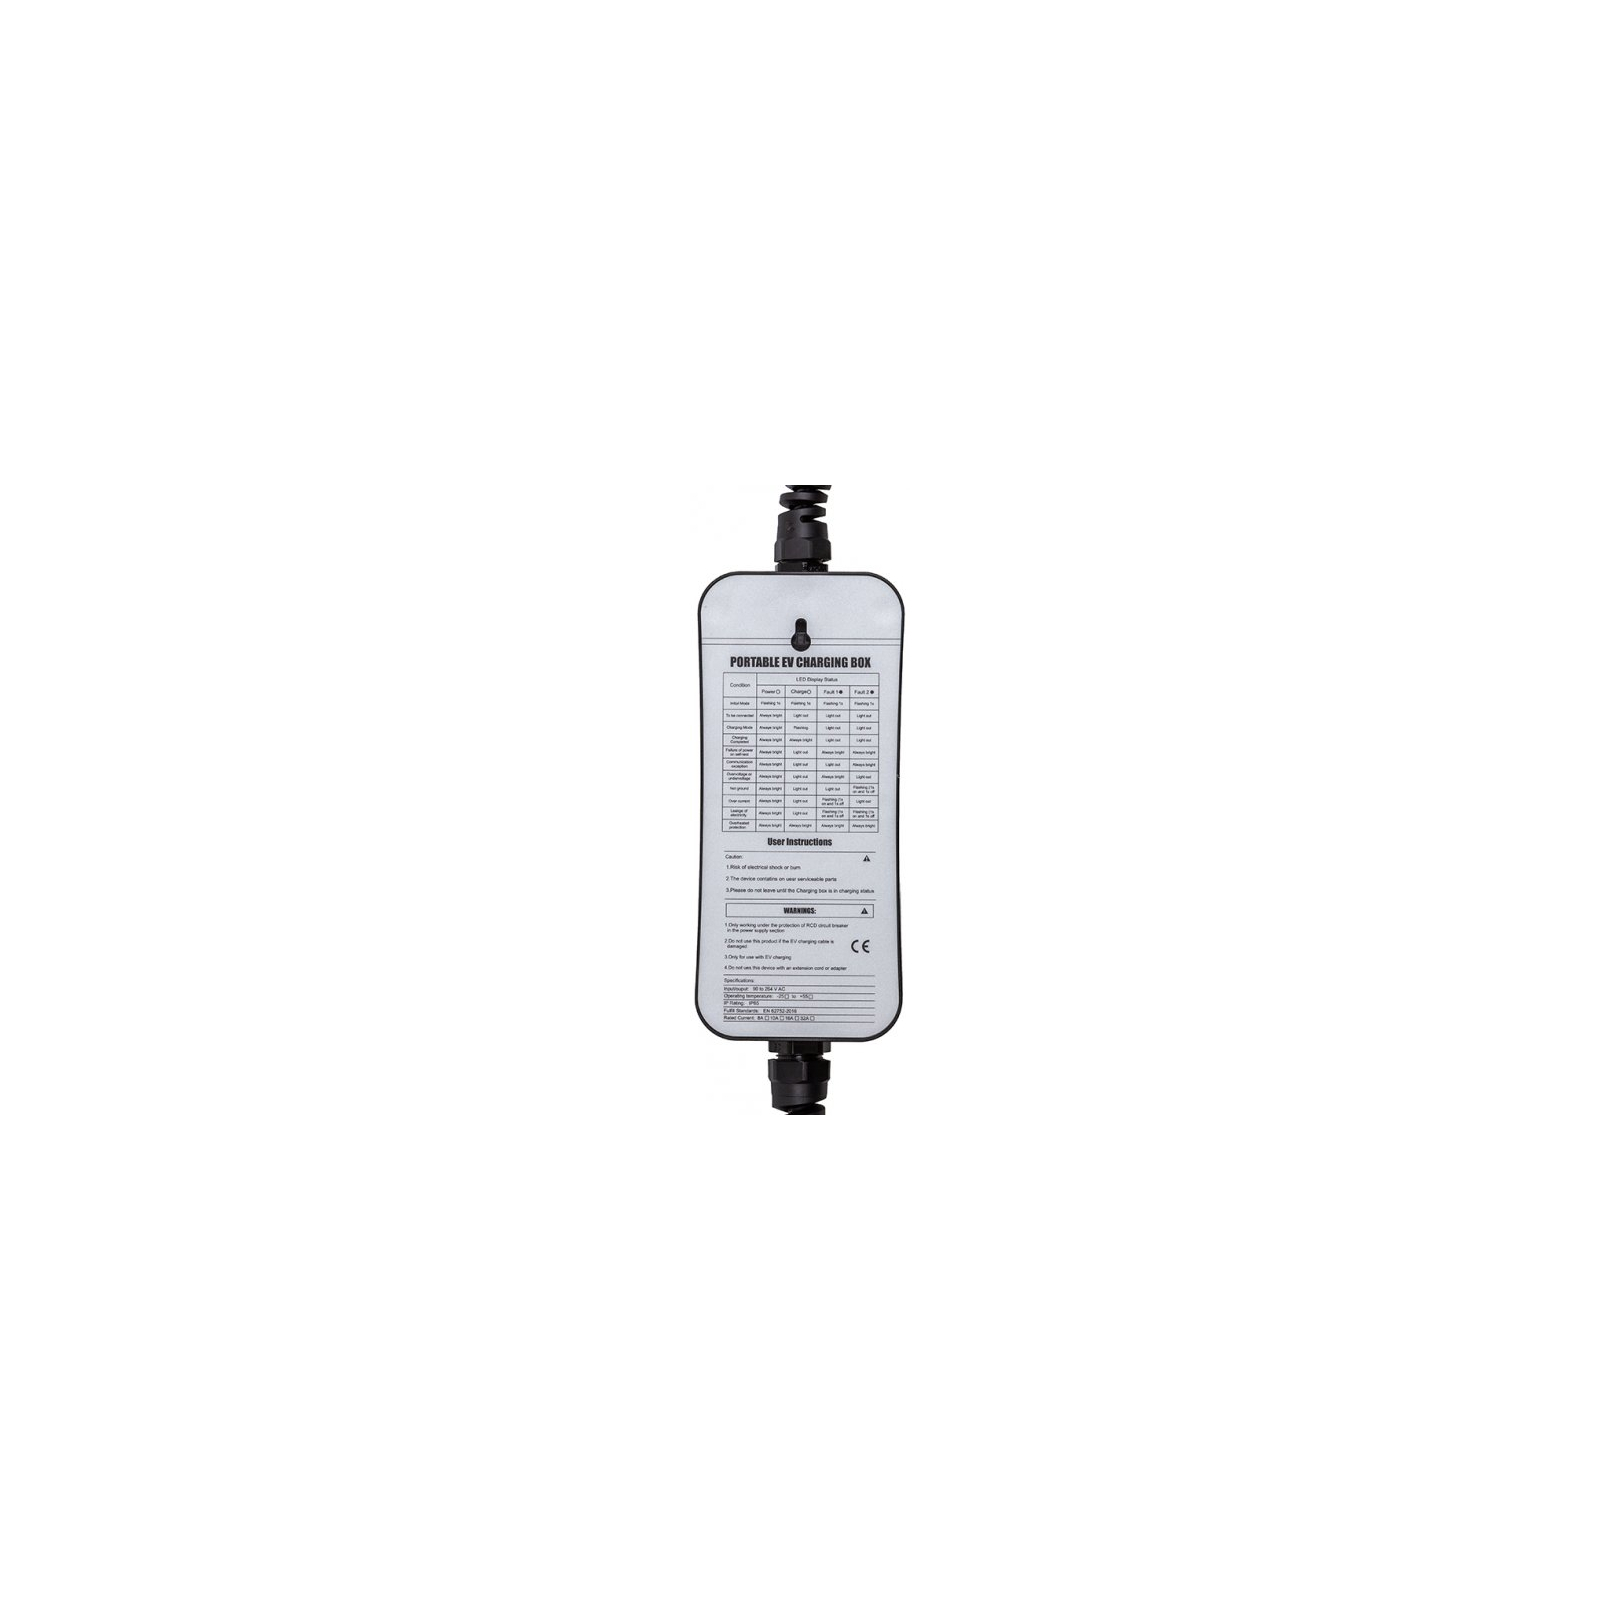 Зарядний пристрій для електромобіля HiSmart Type 1 - Schuko (220V), 16A, 3.6кВт, 1-фазное, 5м (EV200689) зображення 3